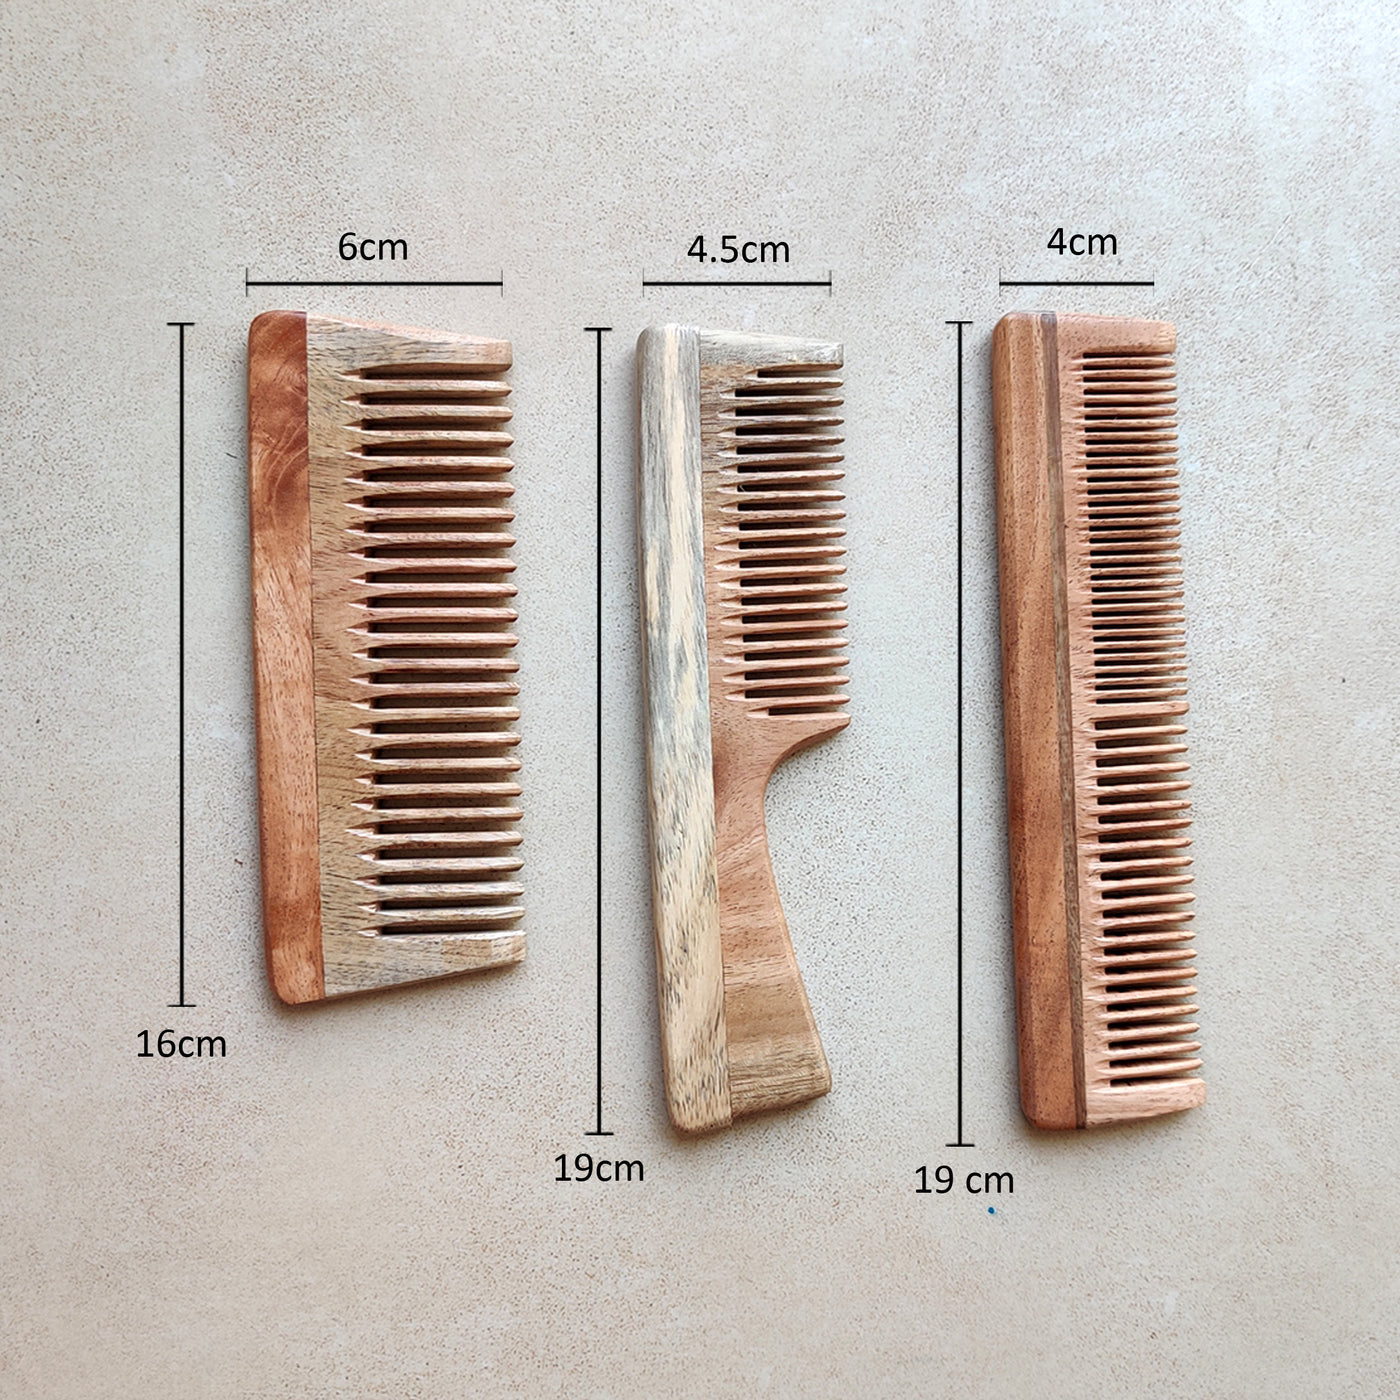 Neem Wood Comb (Sets)